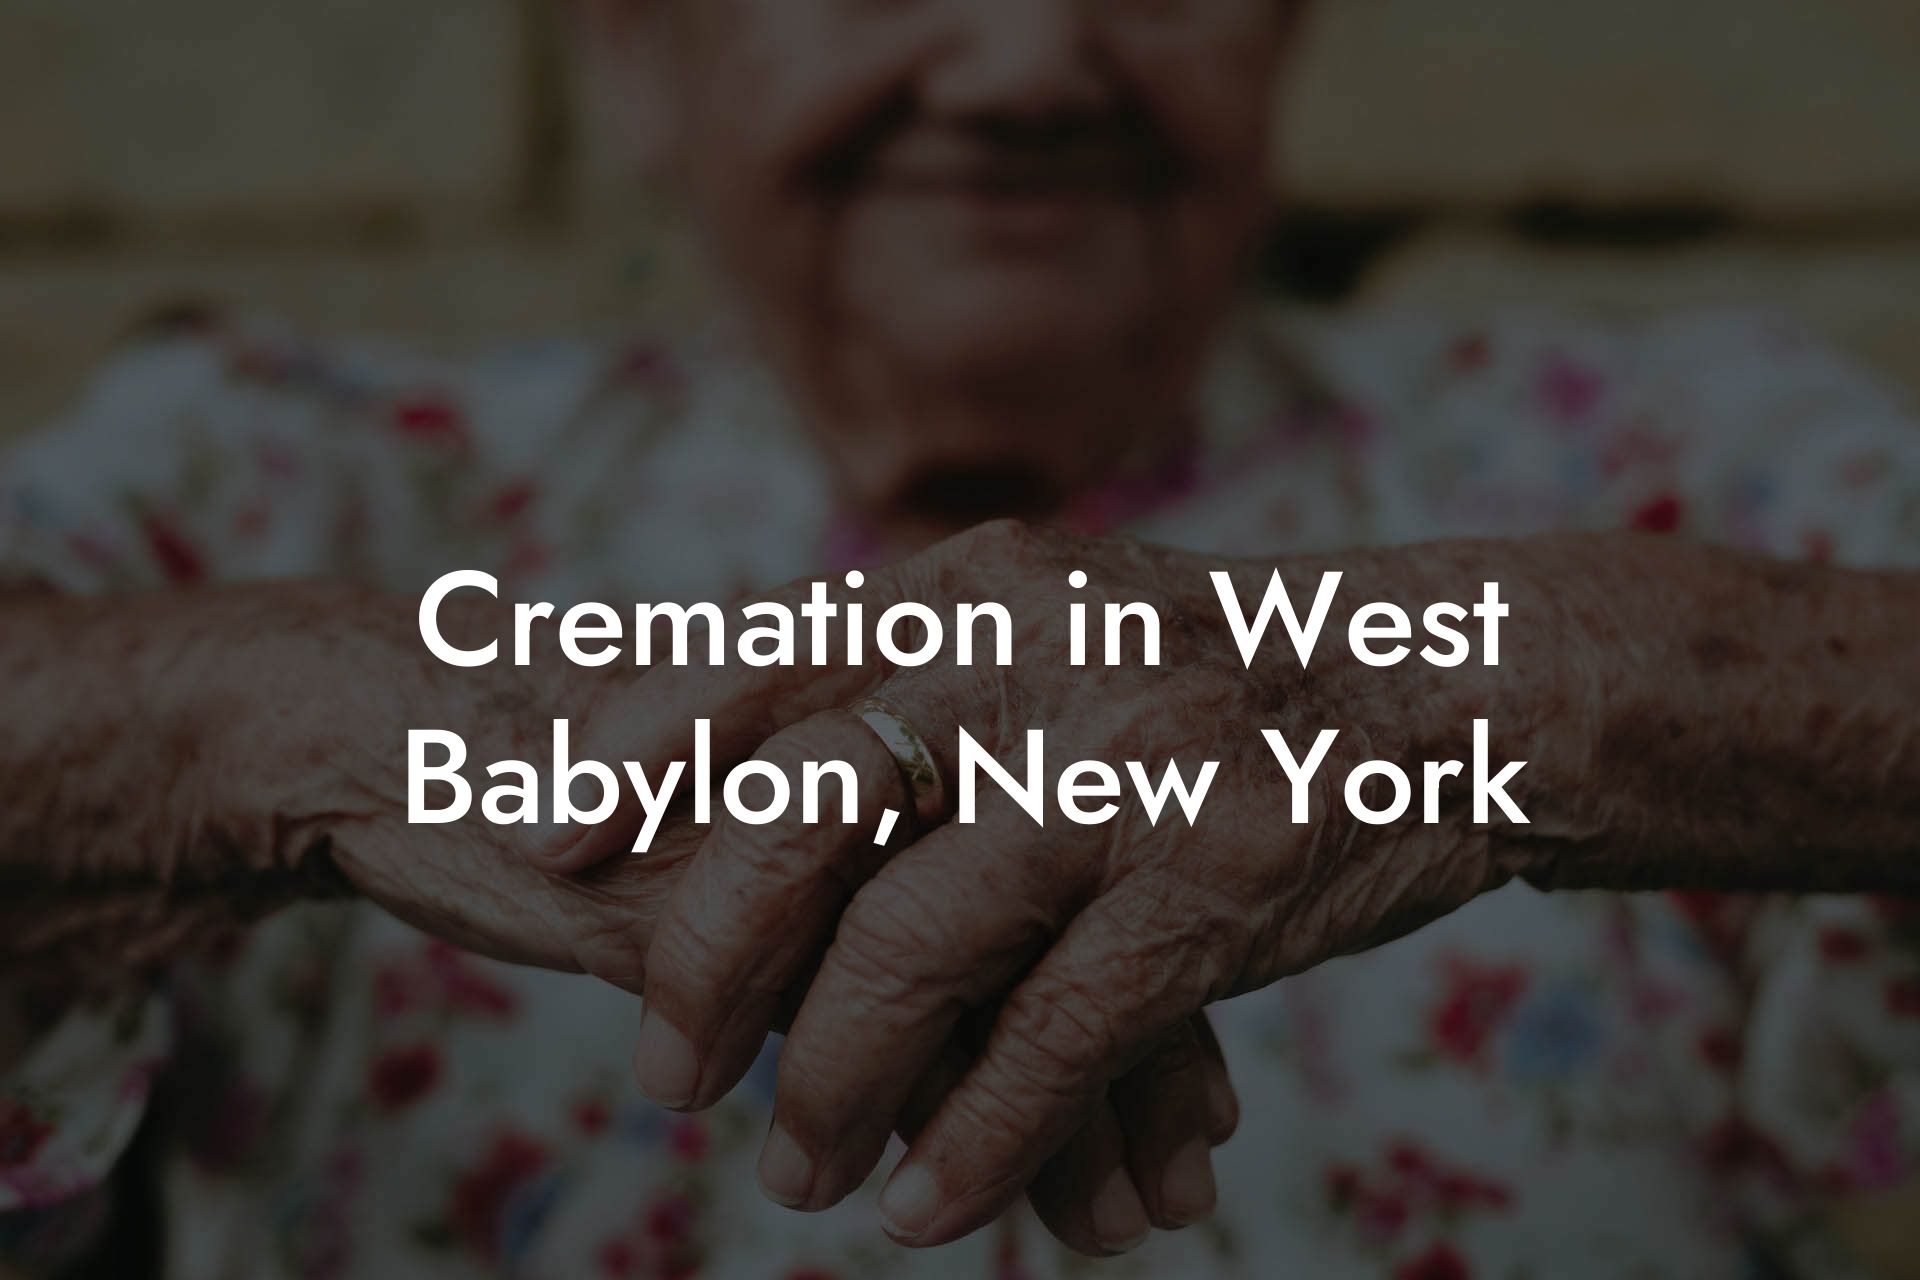 Cremation in West Babylon, New York